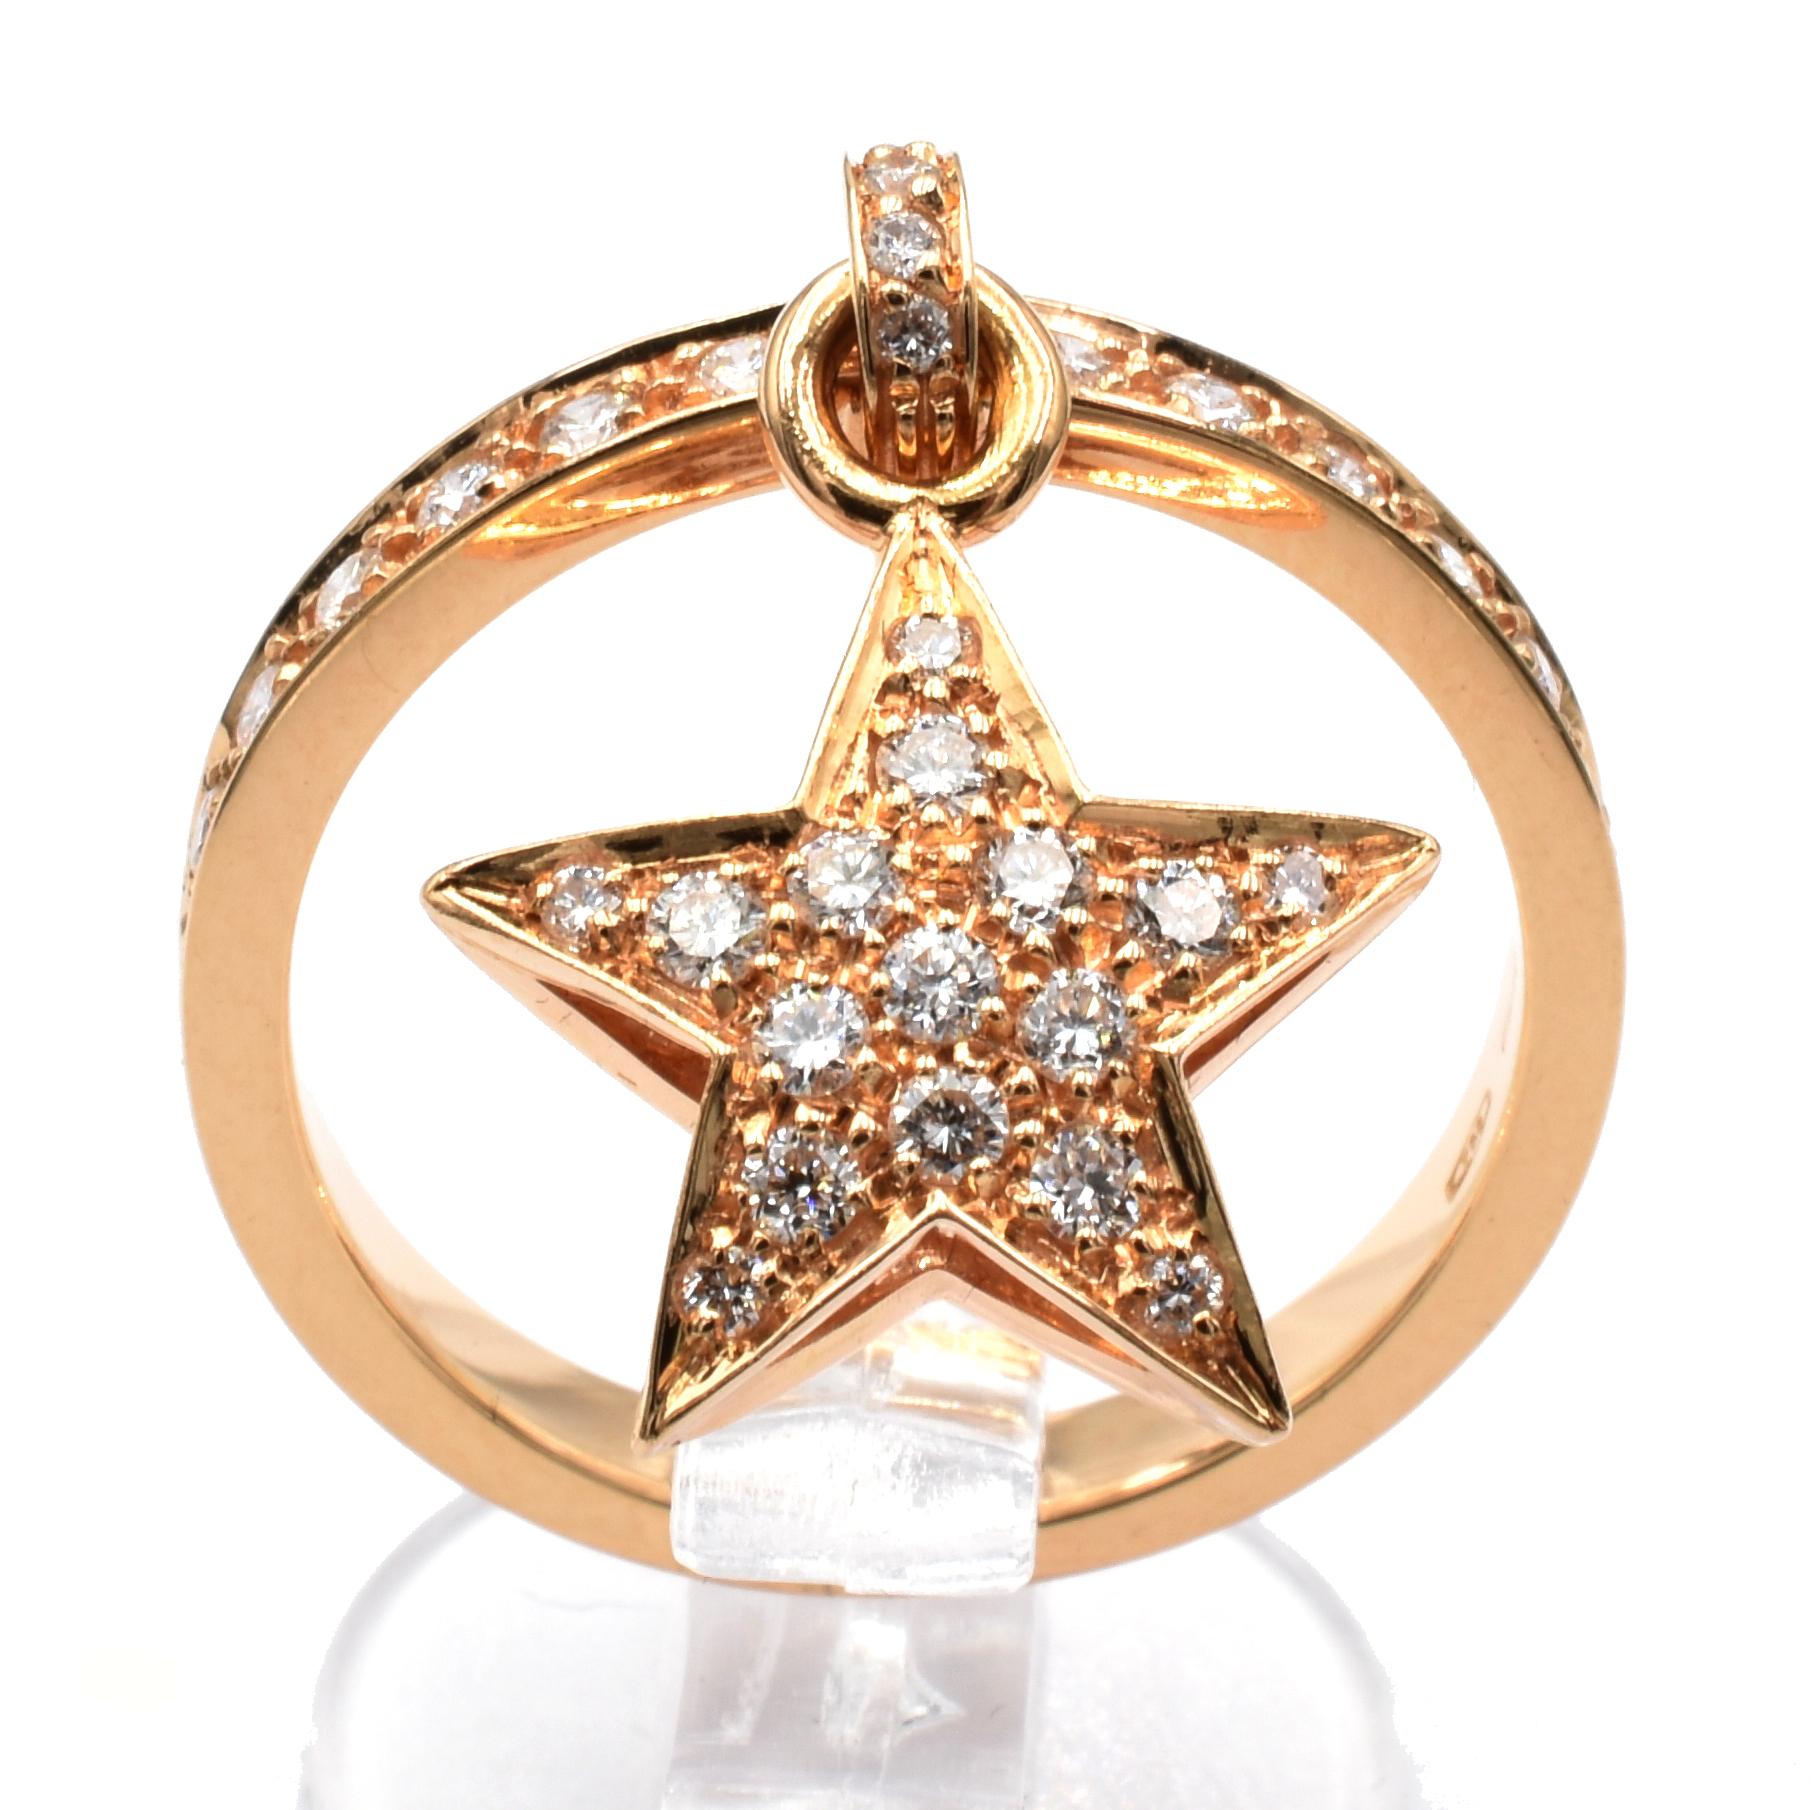 18 Kt Rose Gold Ring mit Anhänger Star Charm. Dieser Charm ist auf beiden Seiten mit weißen Diamanten besetzt und hängt frei am Ring.
Ein sehr lustiger und fröhlicher Ring, der perfekt mit einem Ehering für den täglichen Gebrauch